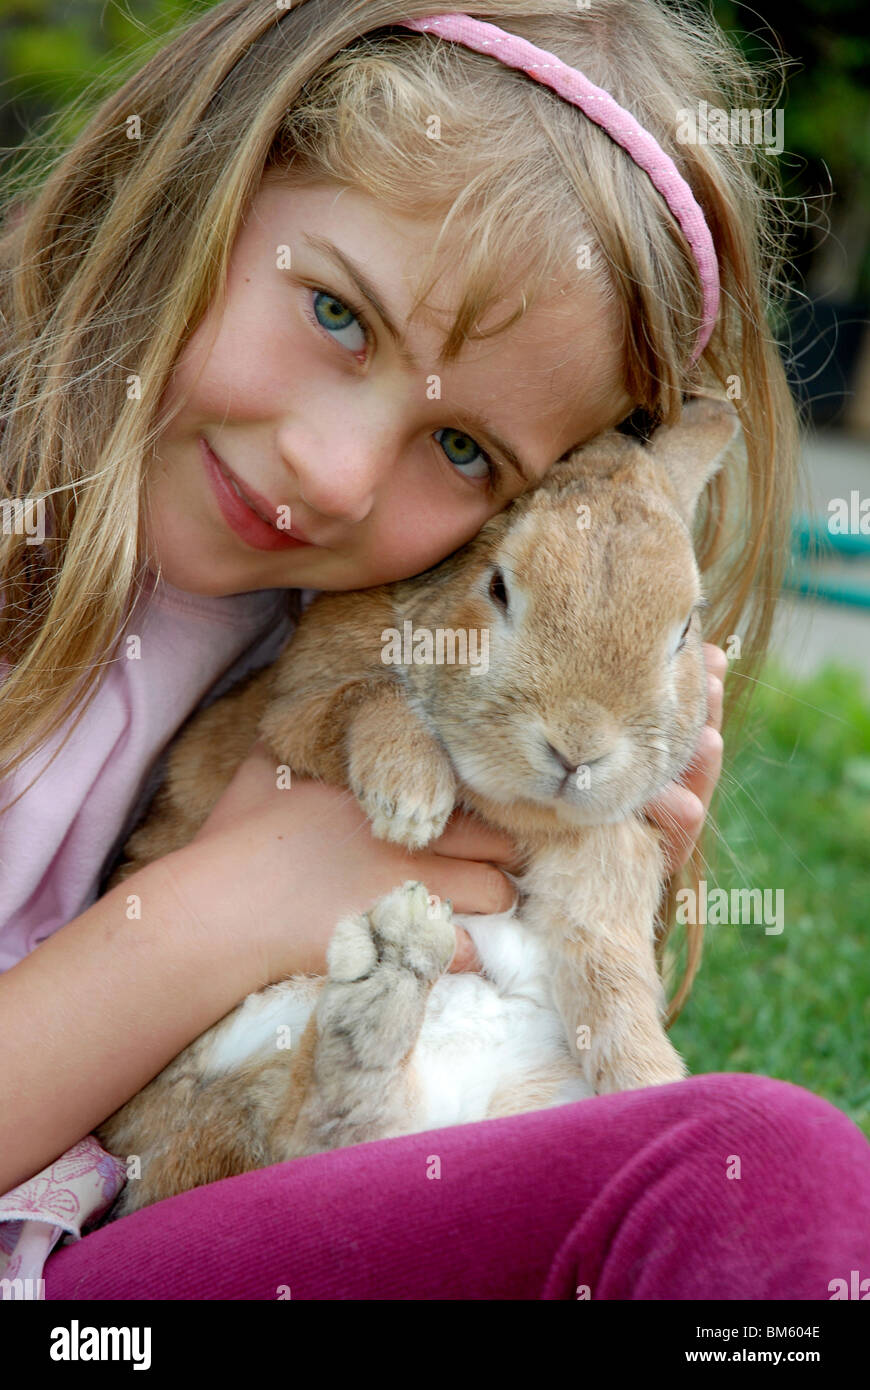 6 ans, fille, avec son animal de bunny Banque D'Images